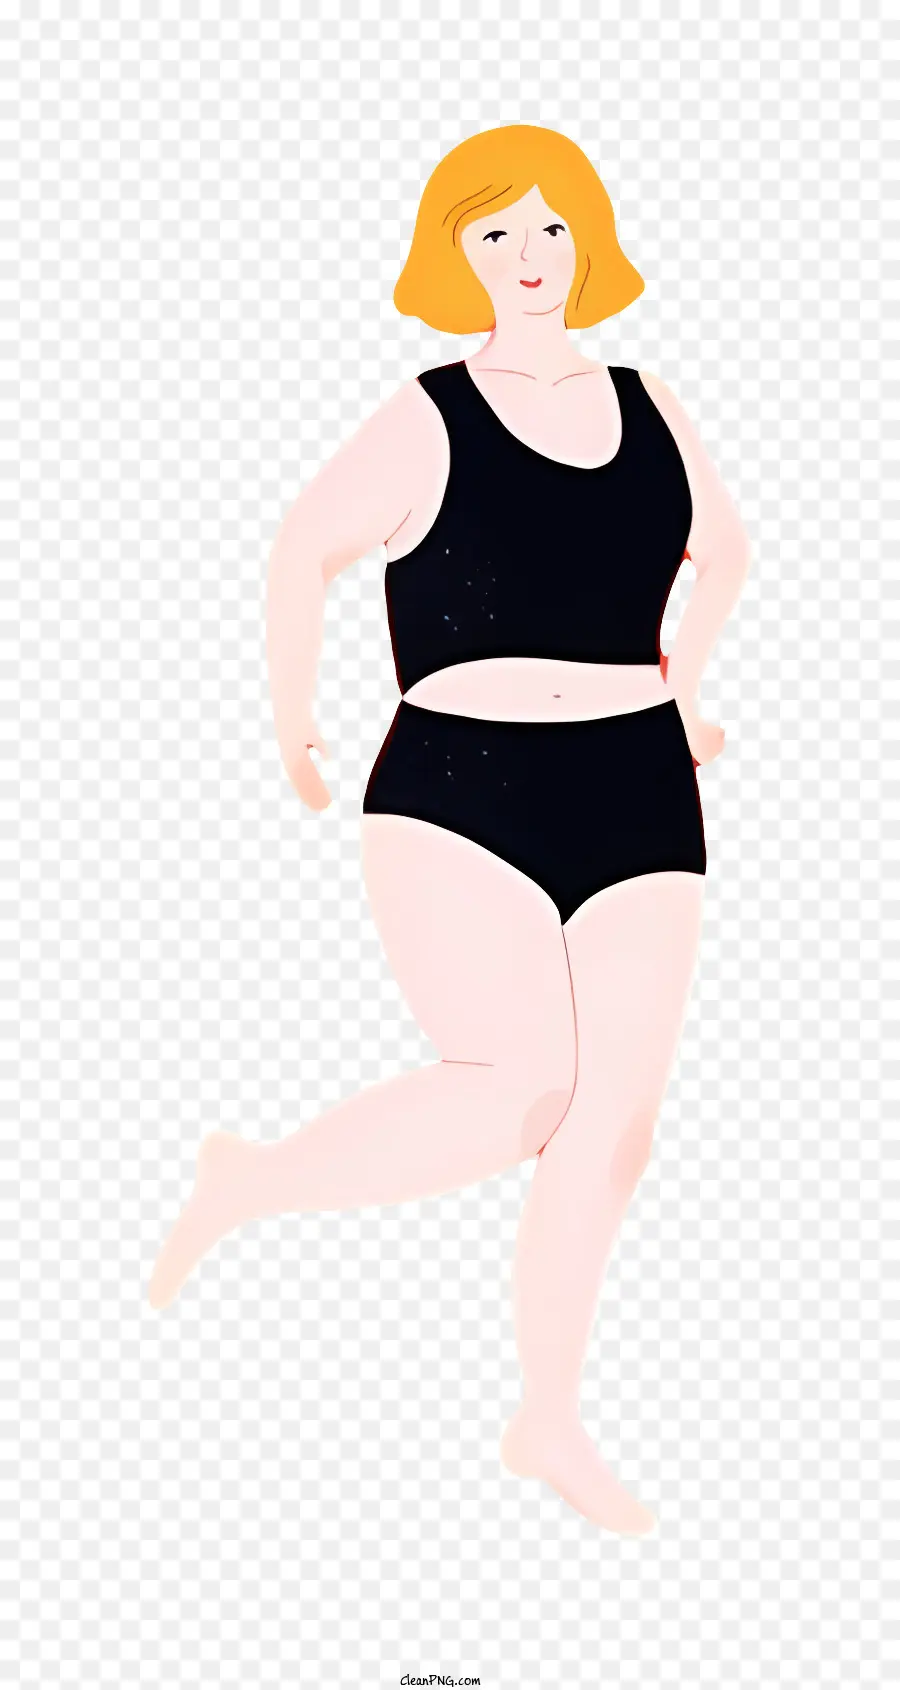 Fettkörperfrau schwarze Bikini hohe taillierte boden rote Haare - Frau, die schwarze Bikini mit verschränkten Armen trägt